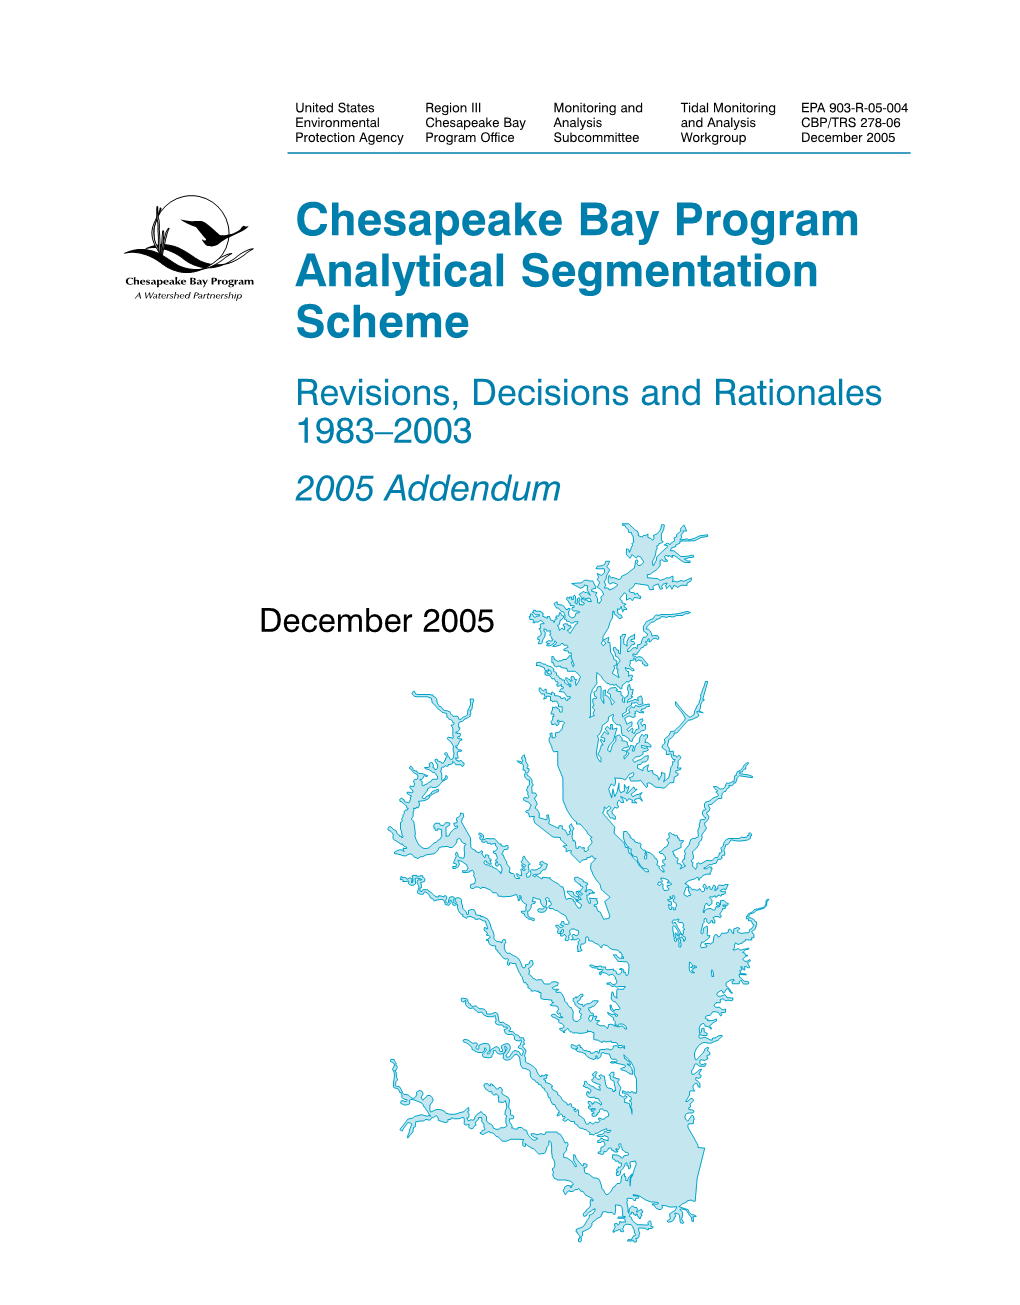 2005 Addendum to Chesapeake Bay Program Analytical Segmentation